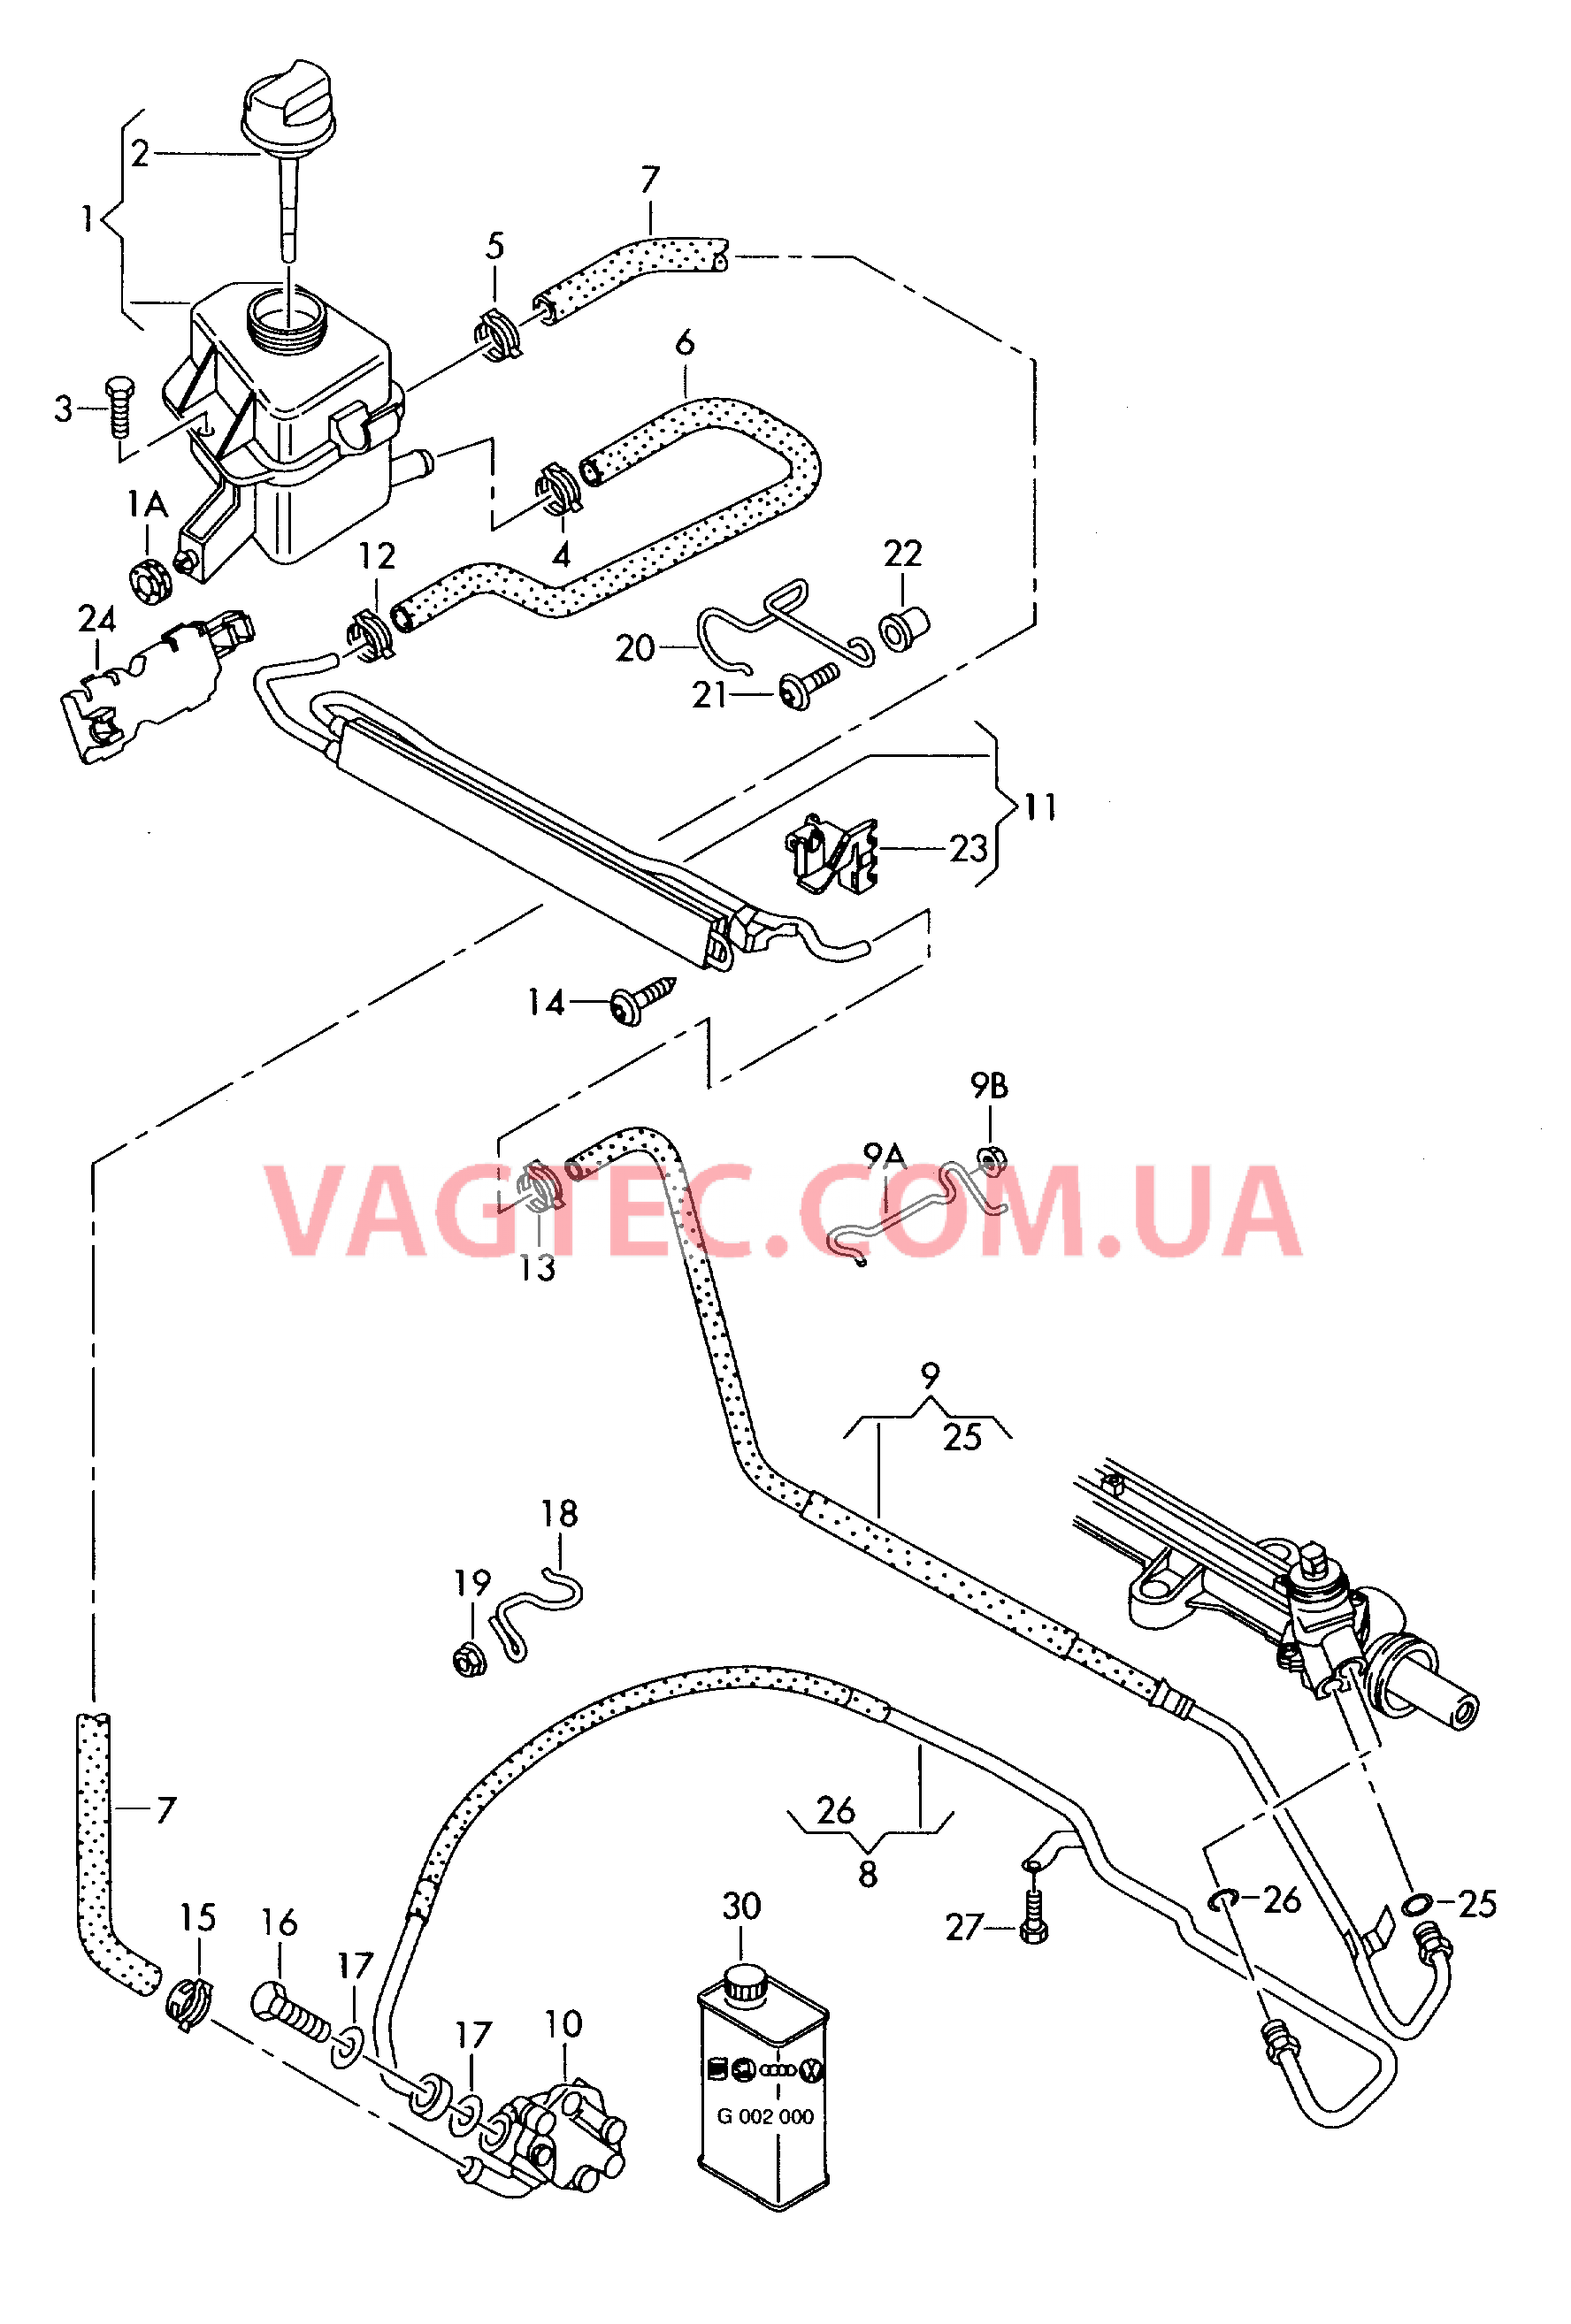 Масляный бачок с соединительными деталями, шлангами  для ГУРа  для VOLKSWAGEN Transporter 2008-1